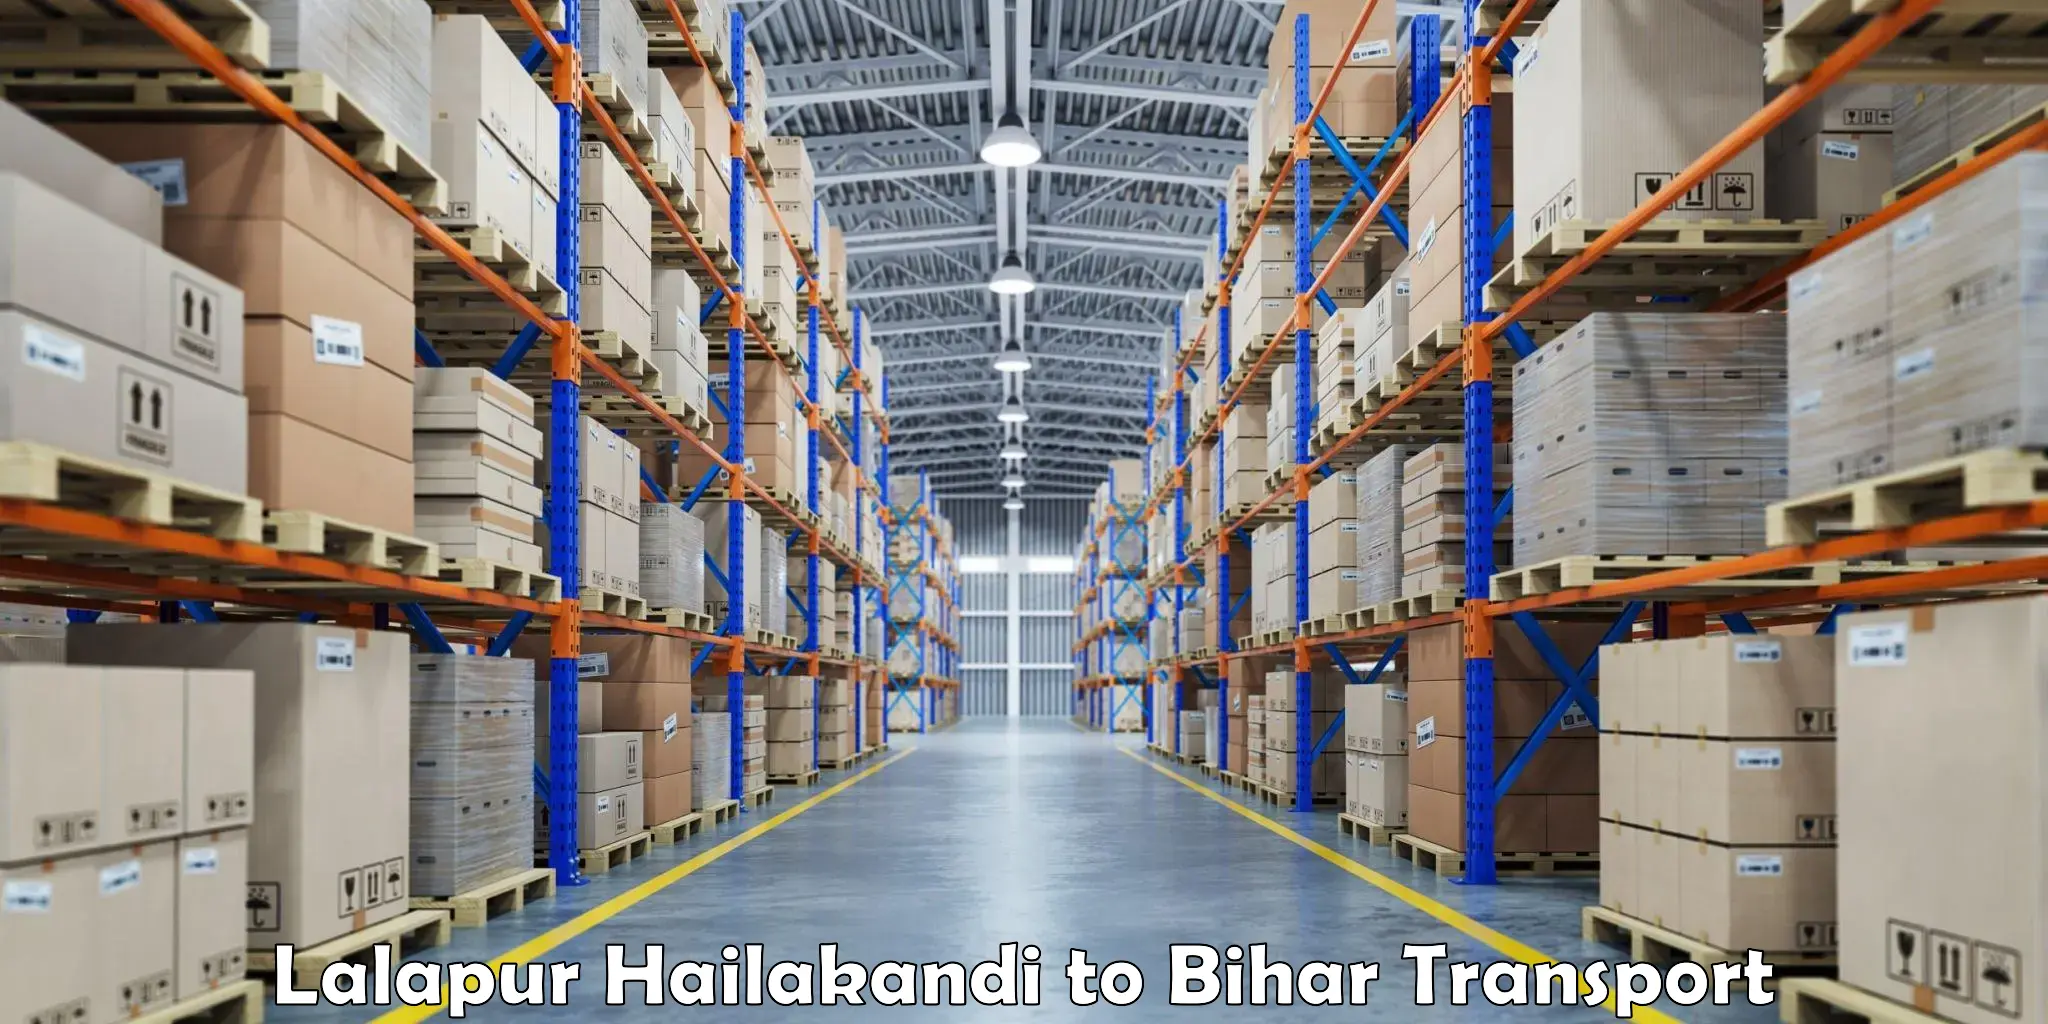 Goods delivery service Lalapur Hailakandi to Maheshkhunt